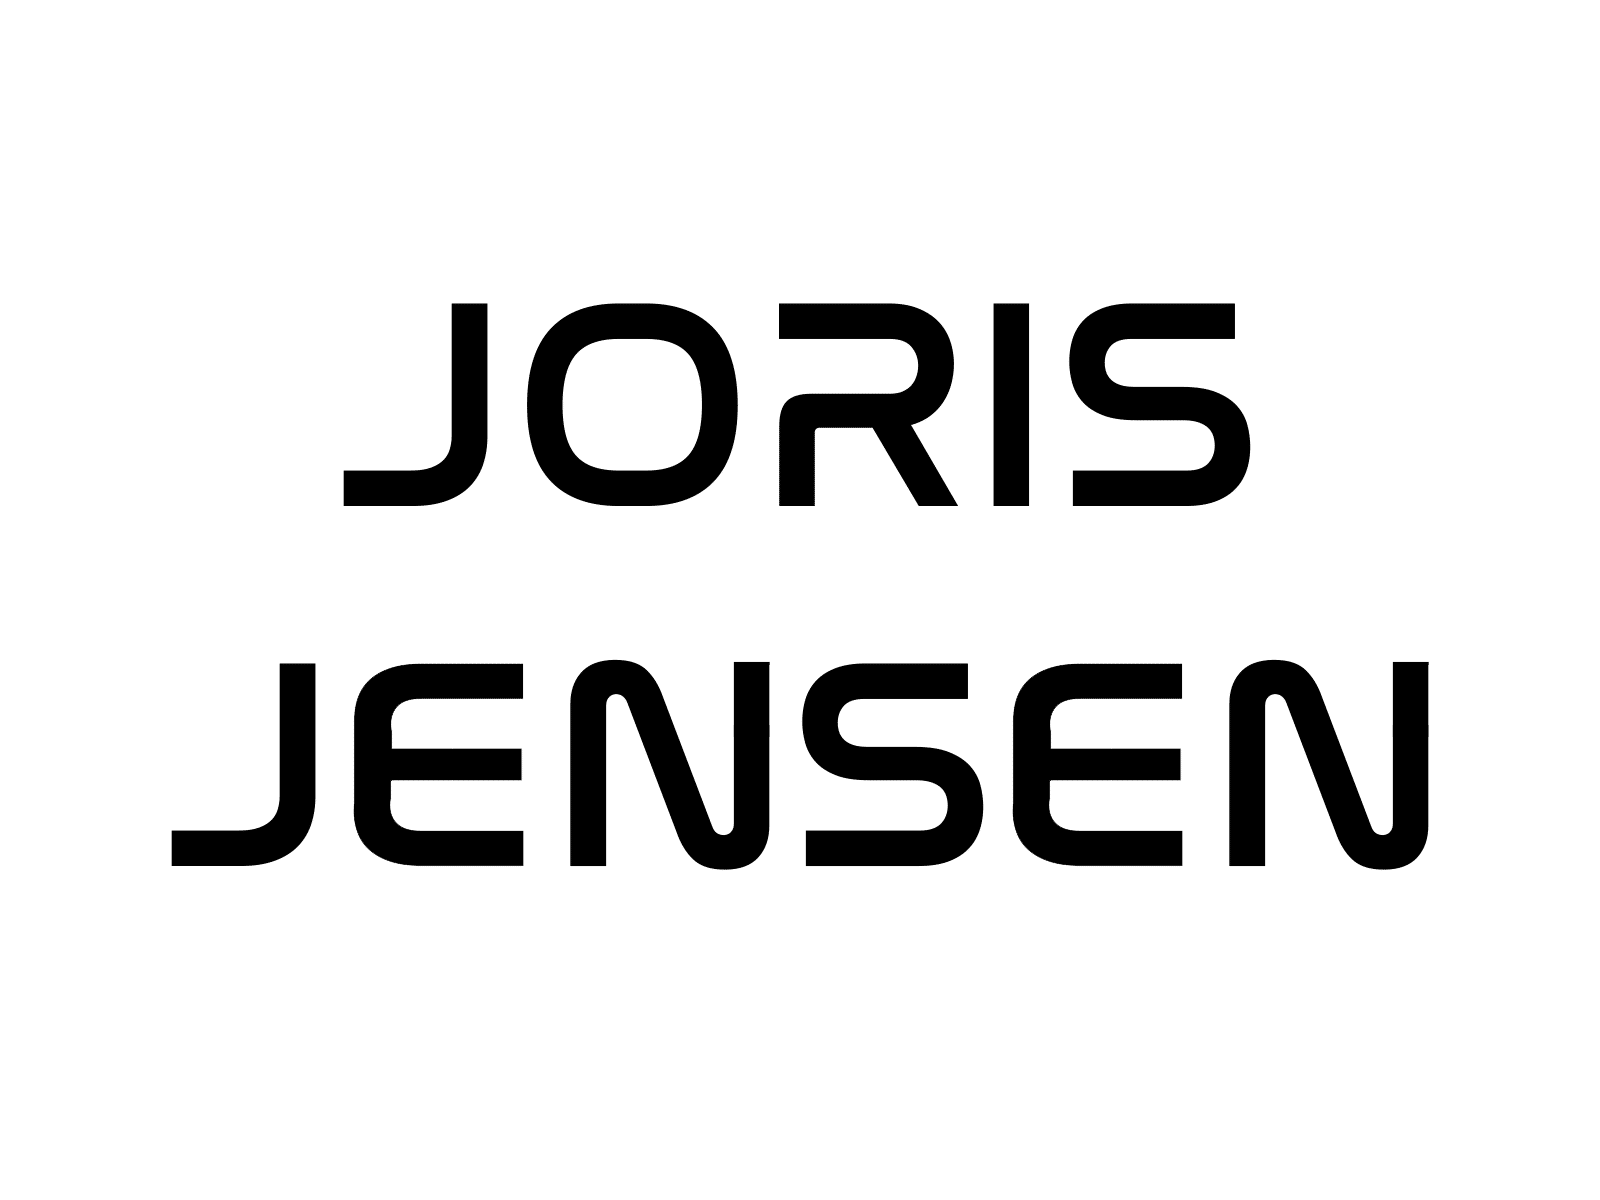 Joris Jensen